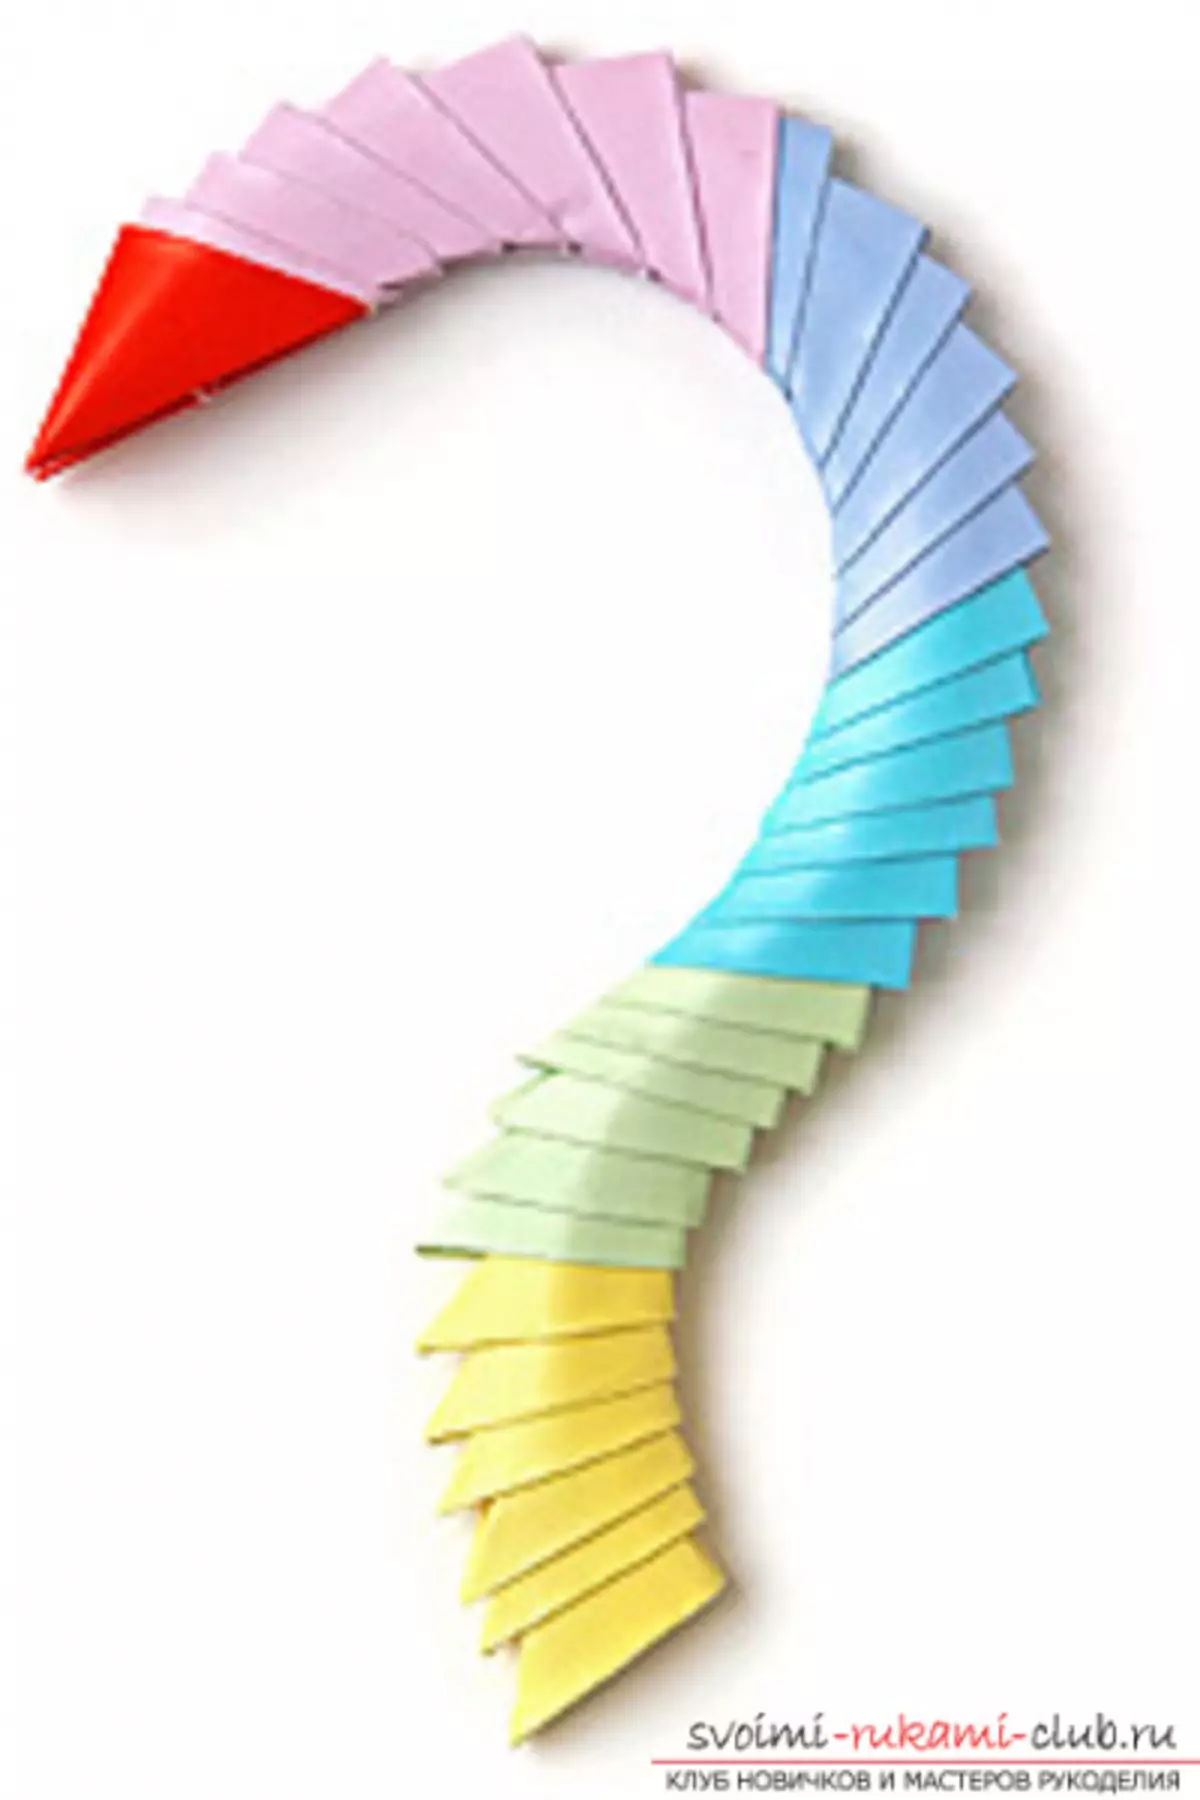 LEBED оригами қағаздан: фотосуреттермен және бейнелермен қадамдық жасау әдісі